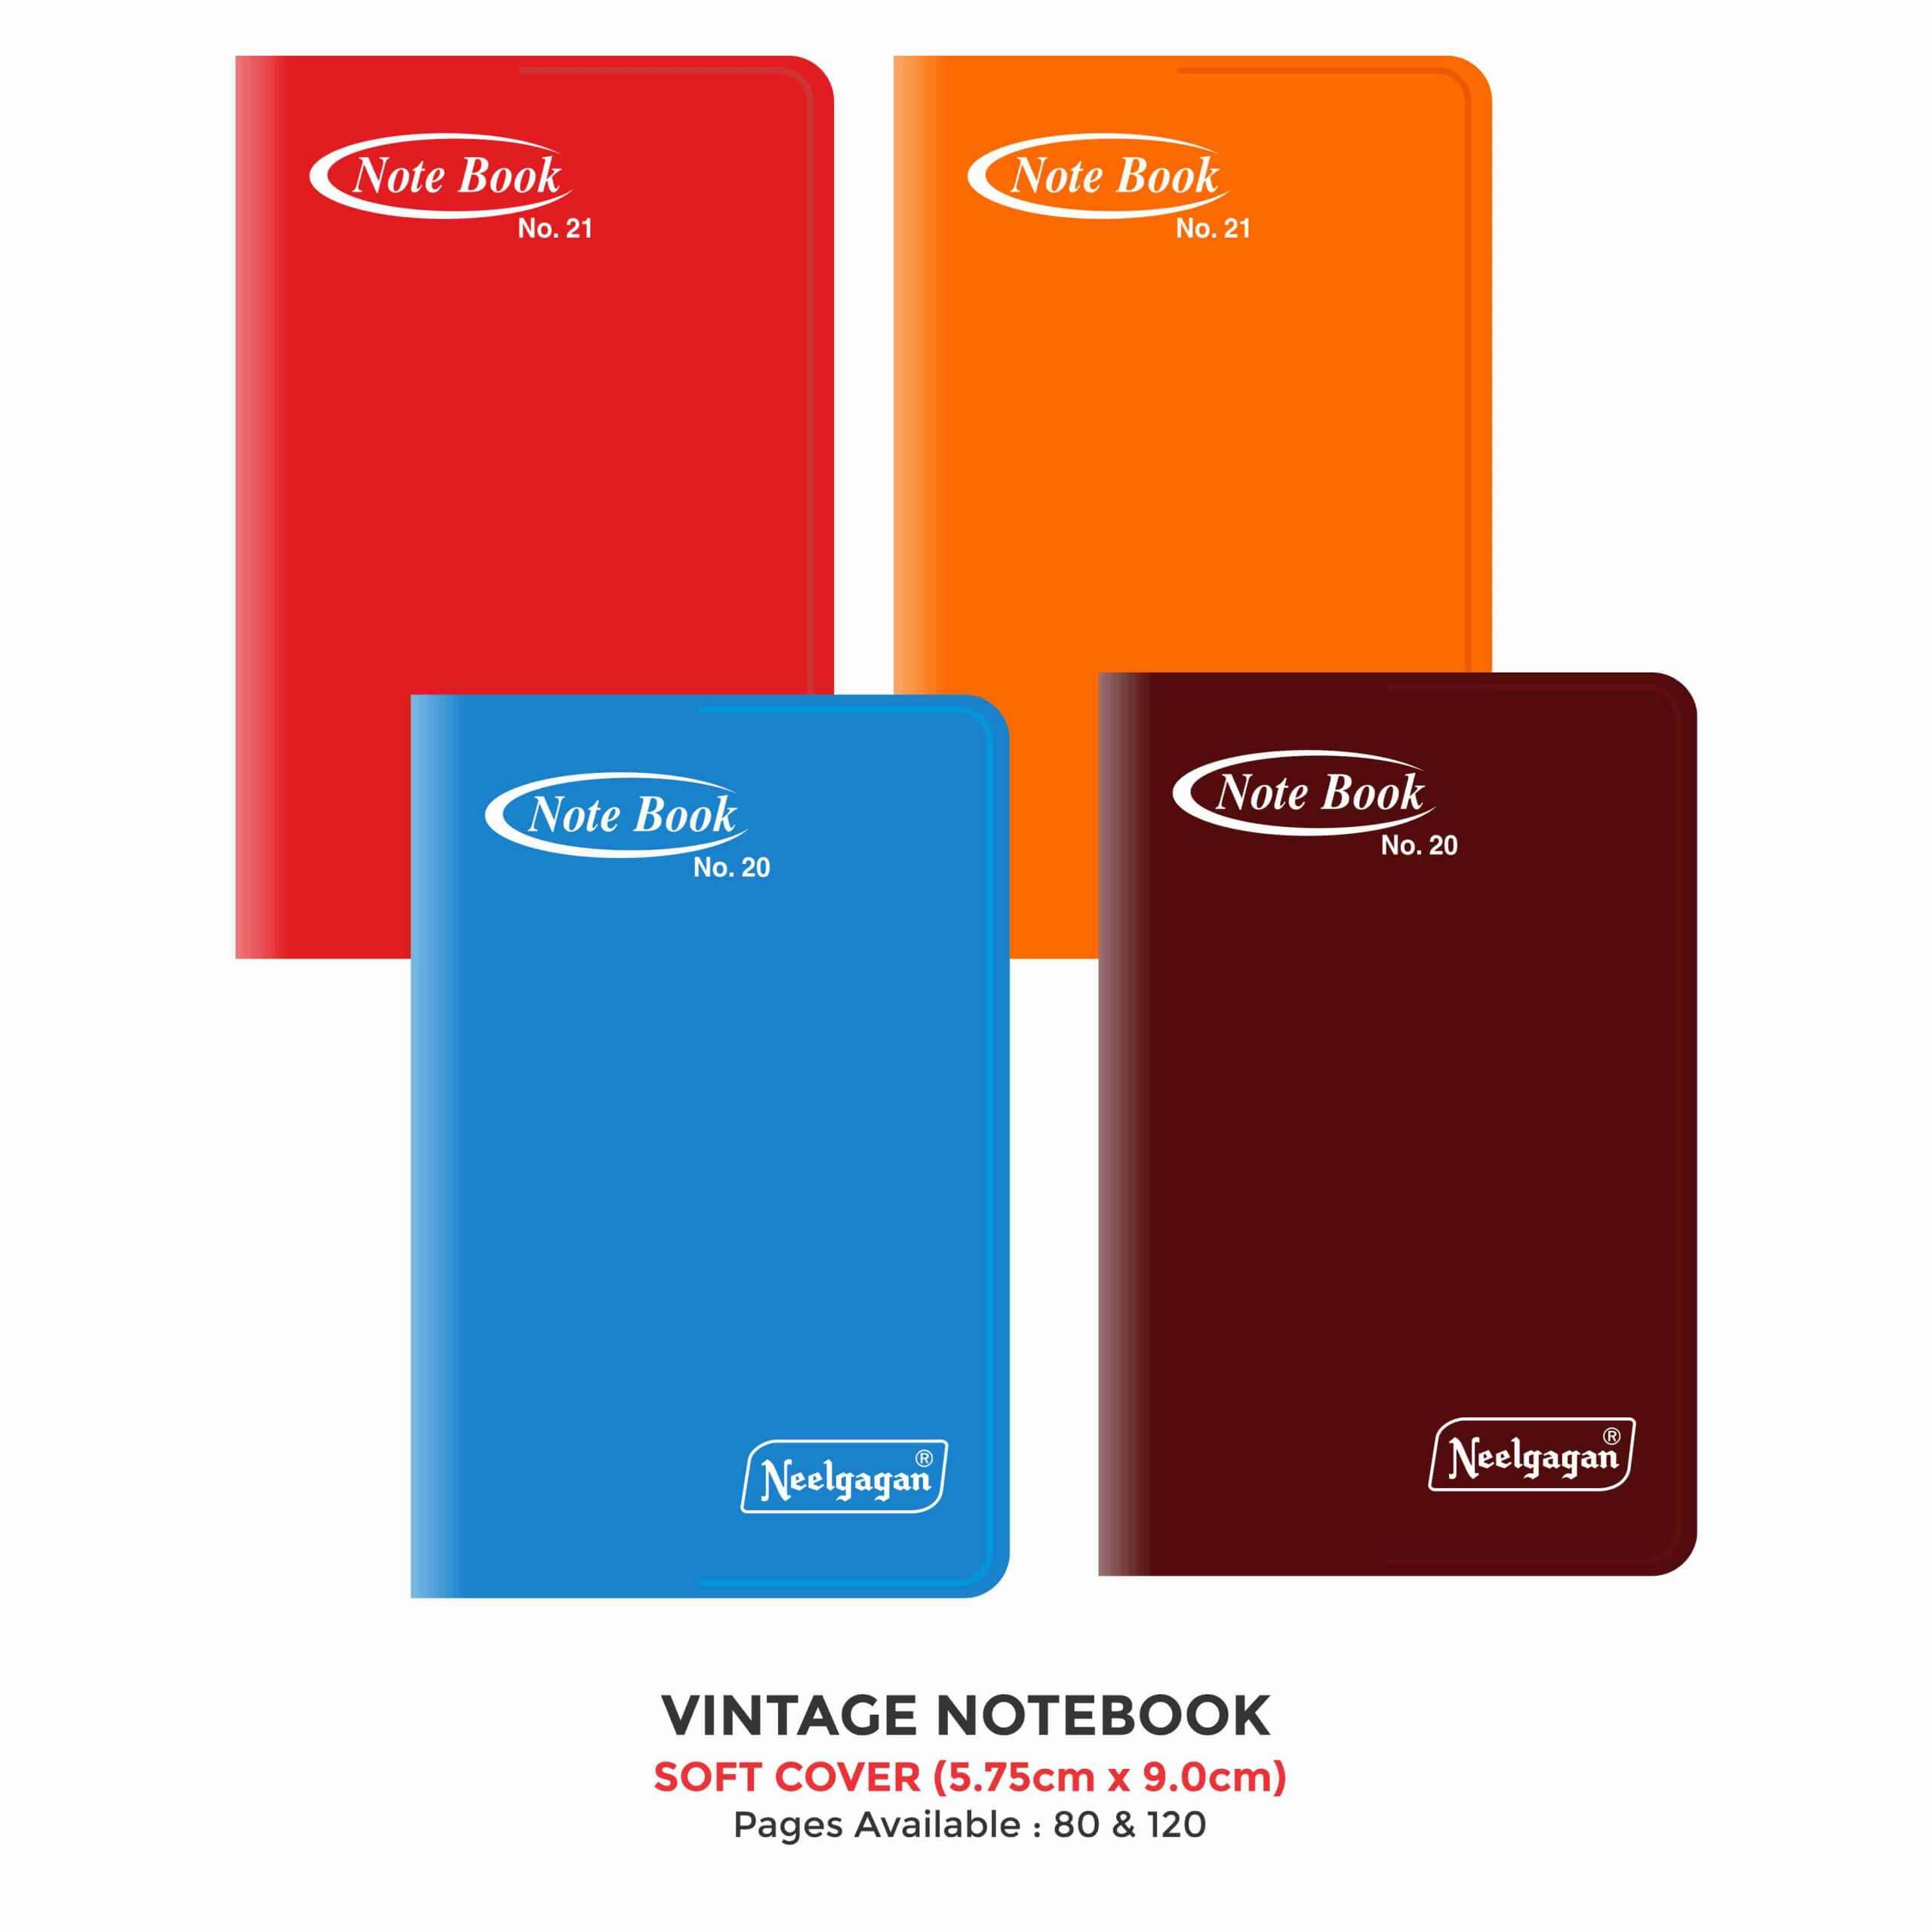 Vintage Notebook, (No. 20 & 21) (5.75cm x 9.0cm) Soft Cover Plastic